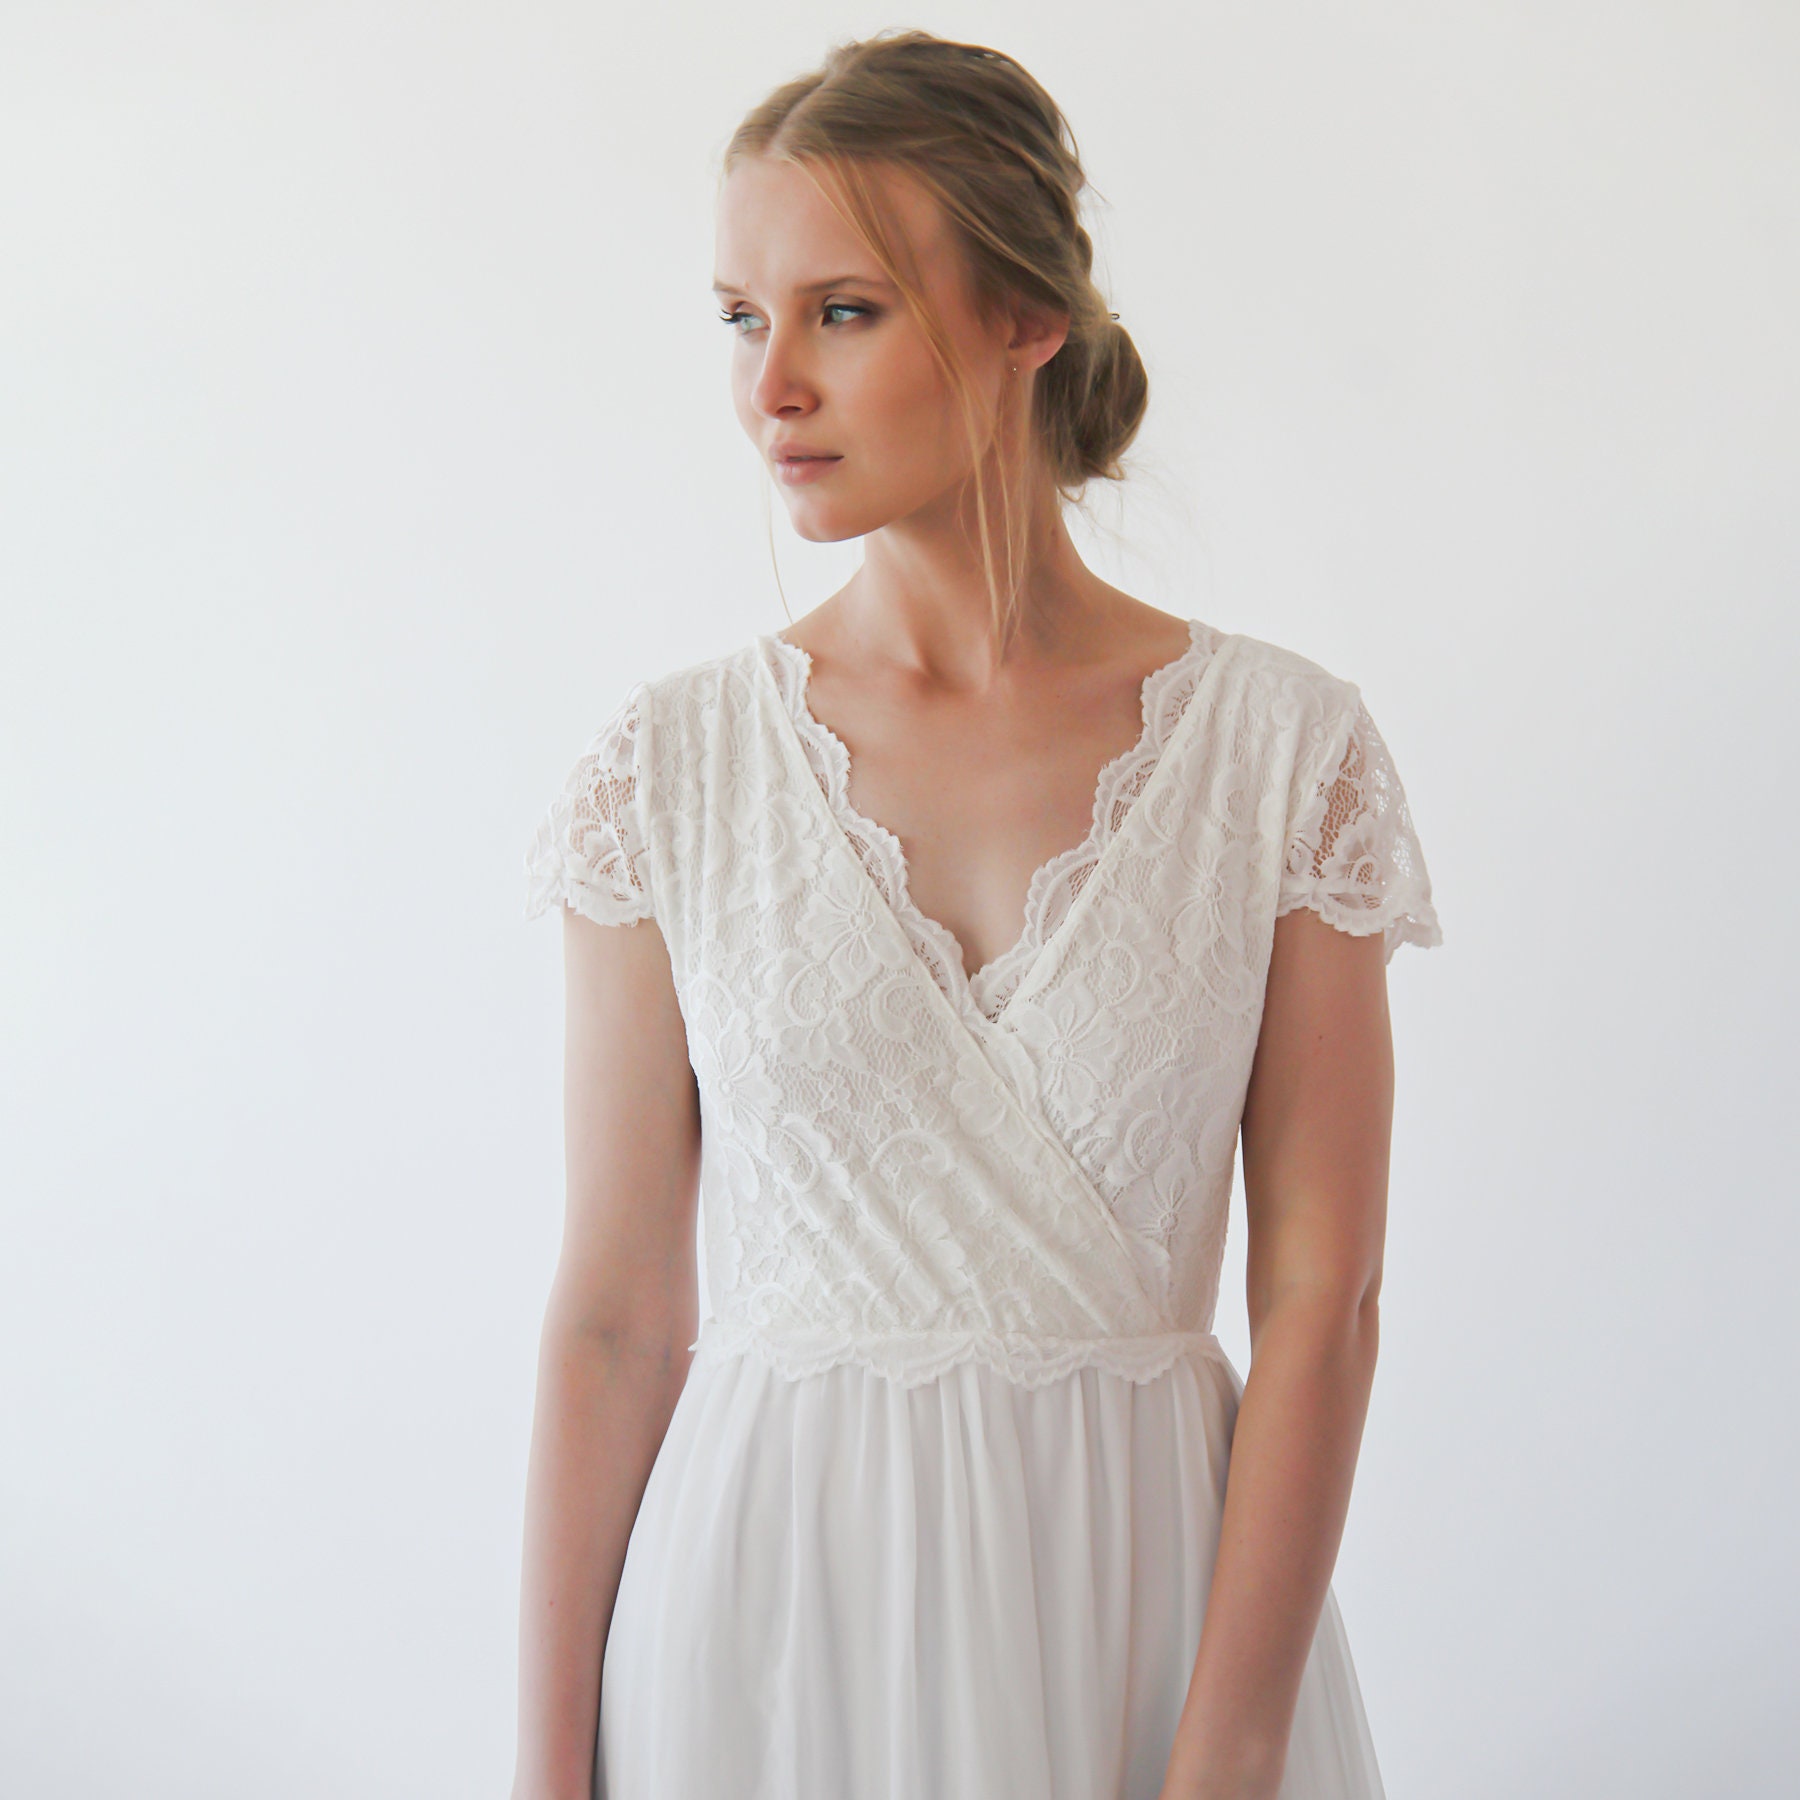 Ivory Short Cape Sleeves Lace Wedding Dress 1235 - Etsy Israel